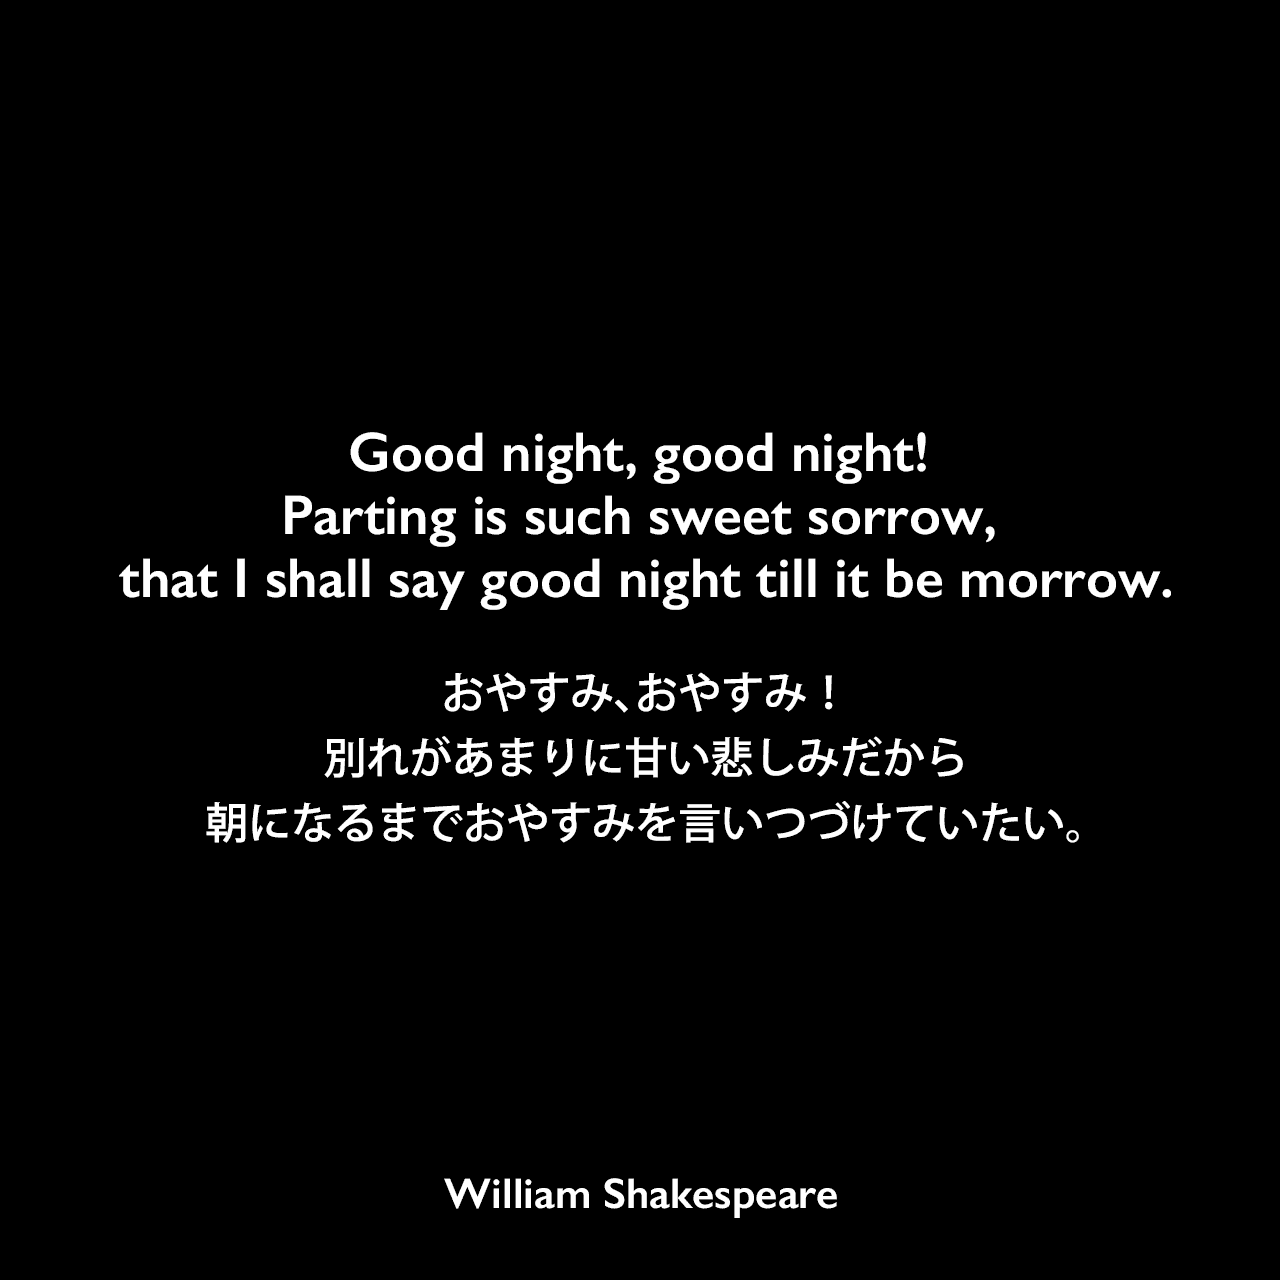 Good night, good night! Parting is such sweet sorrow, that I shall say good night till it be morrow.おやすみ、おやすみ！別れがあまりに甘い悲しみだから、朝になるまでおやすみを言いつづけていたい。William Shakespeare